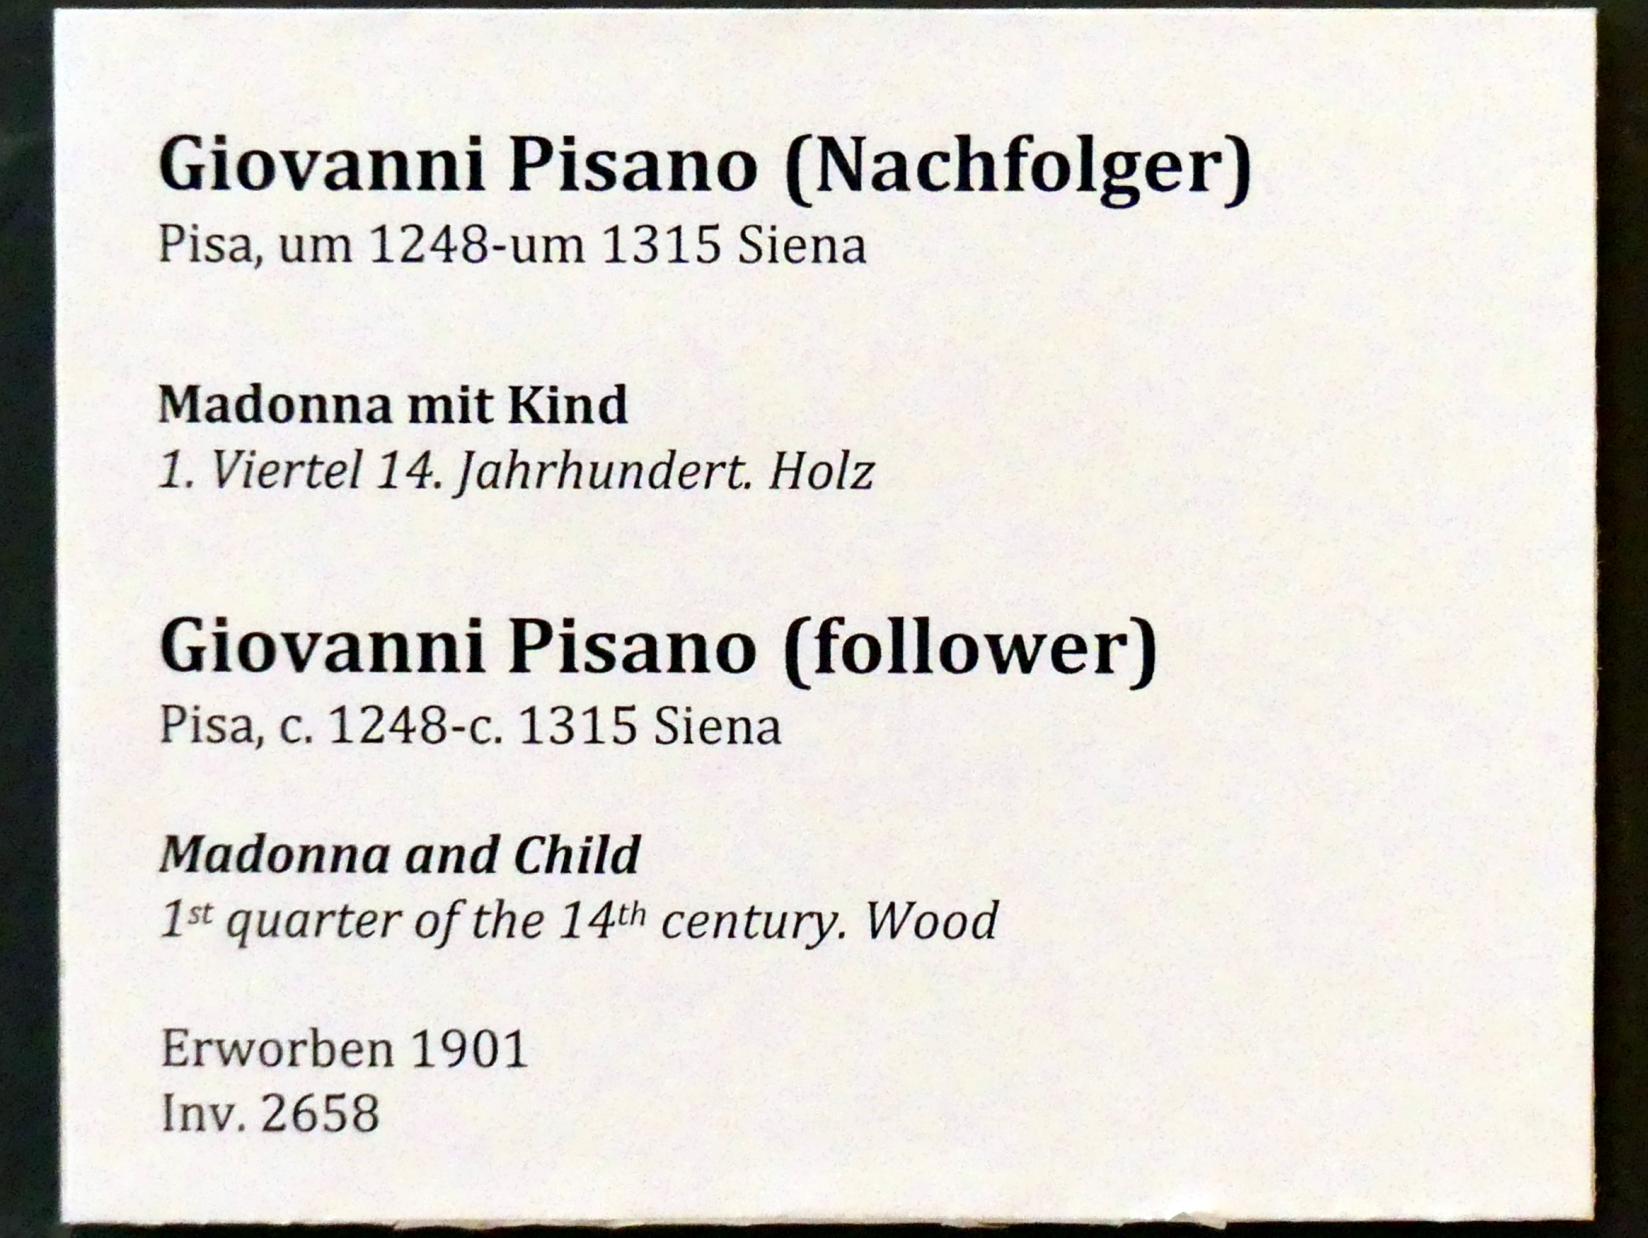 Giovanni Pisano (Nachfolger) (1315), Madonna mit Kind, Berlin, Bode-Museum, Saal 108, 1. Viertel 14. Jhd., Bild 3/3